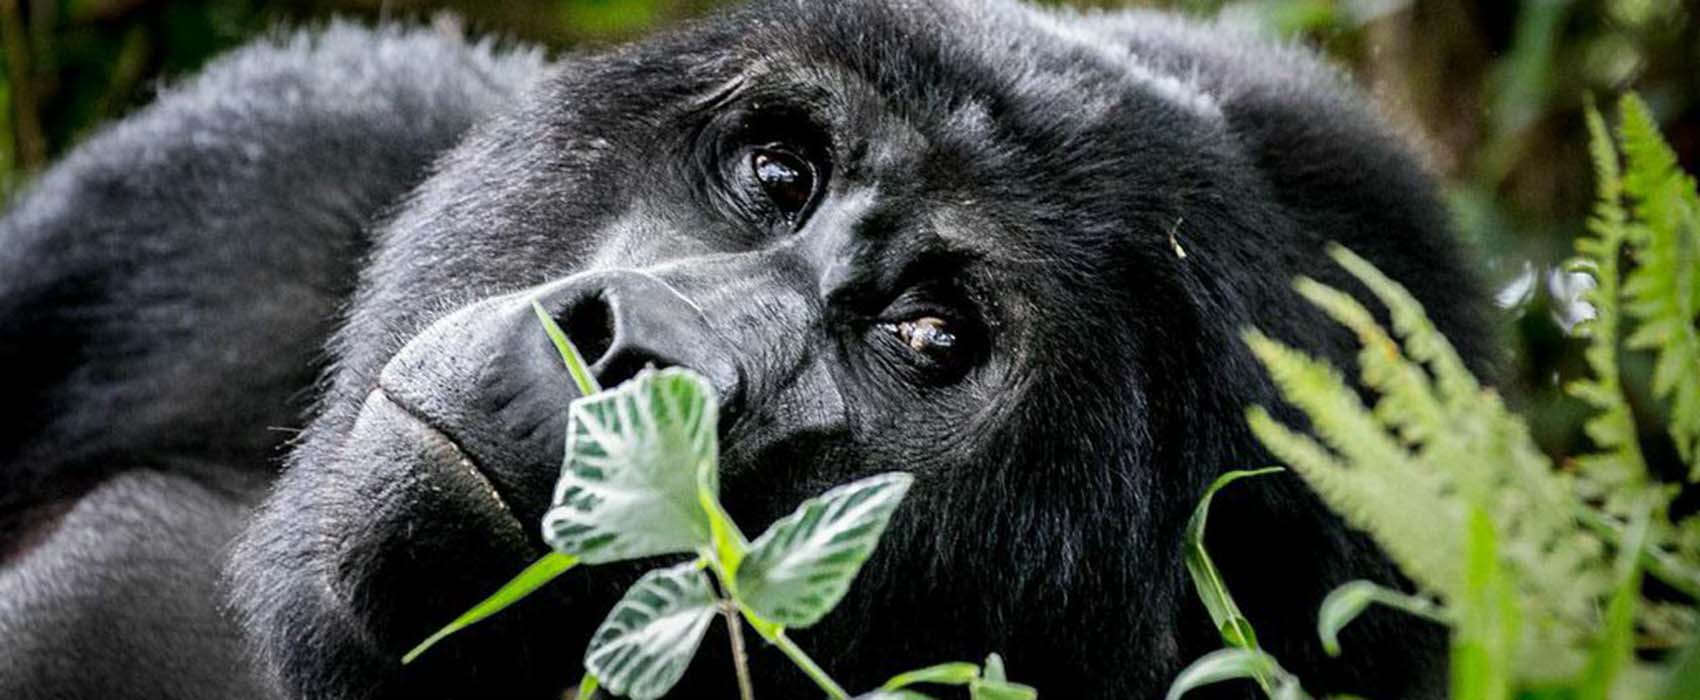 Gorilla trekking Rwanda holiday packages